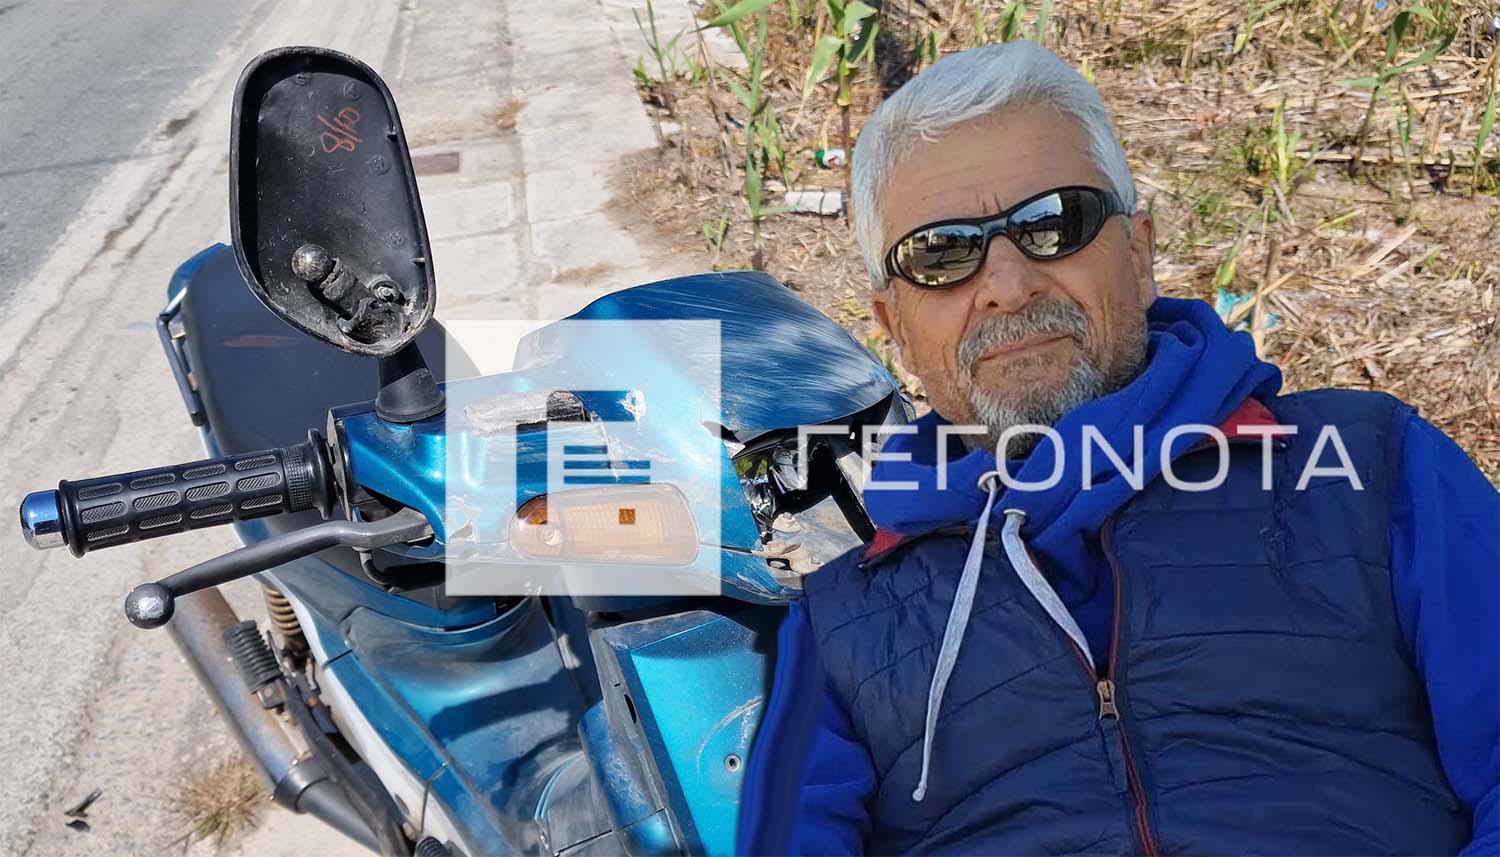 Βόλος: Συνταξιούχος σταθμάρχης του ΟΣΕ ο 69χρονος που σκοτώθηκε σε τροχαίο όταν όχημα παραβίασε τον ερυθρό σηματοδότη